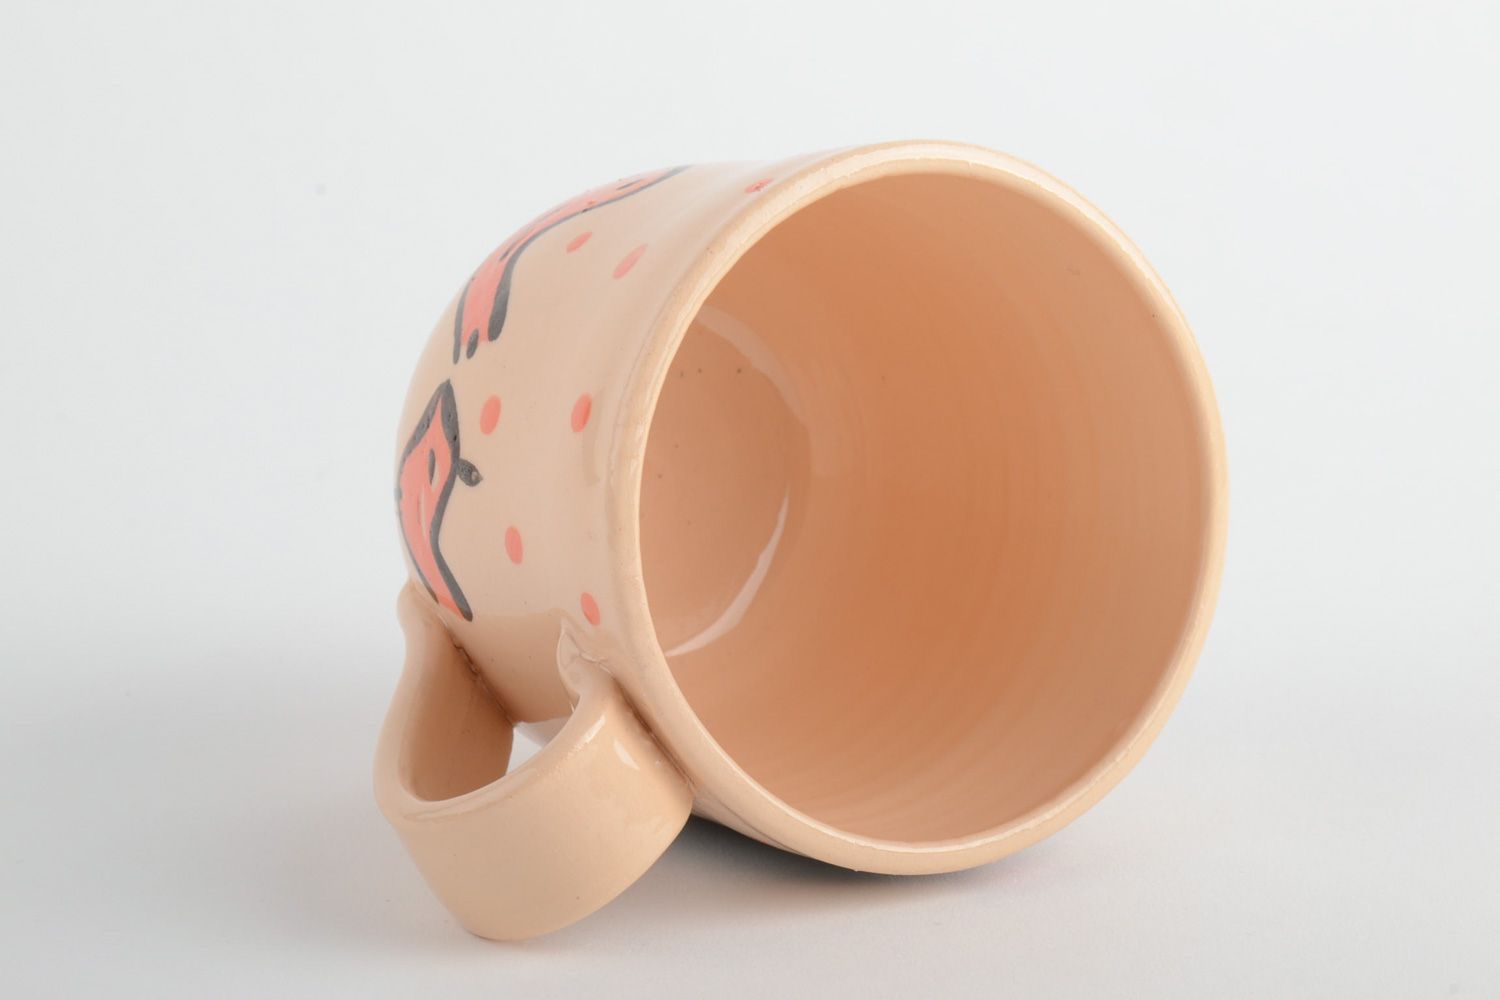 Глиняная чашка расписанная эмалью и покрытая глазурью с рисунком птички фото 4